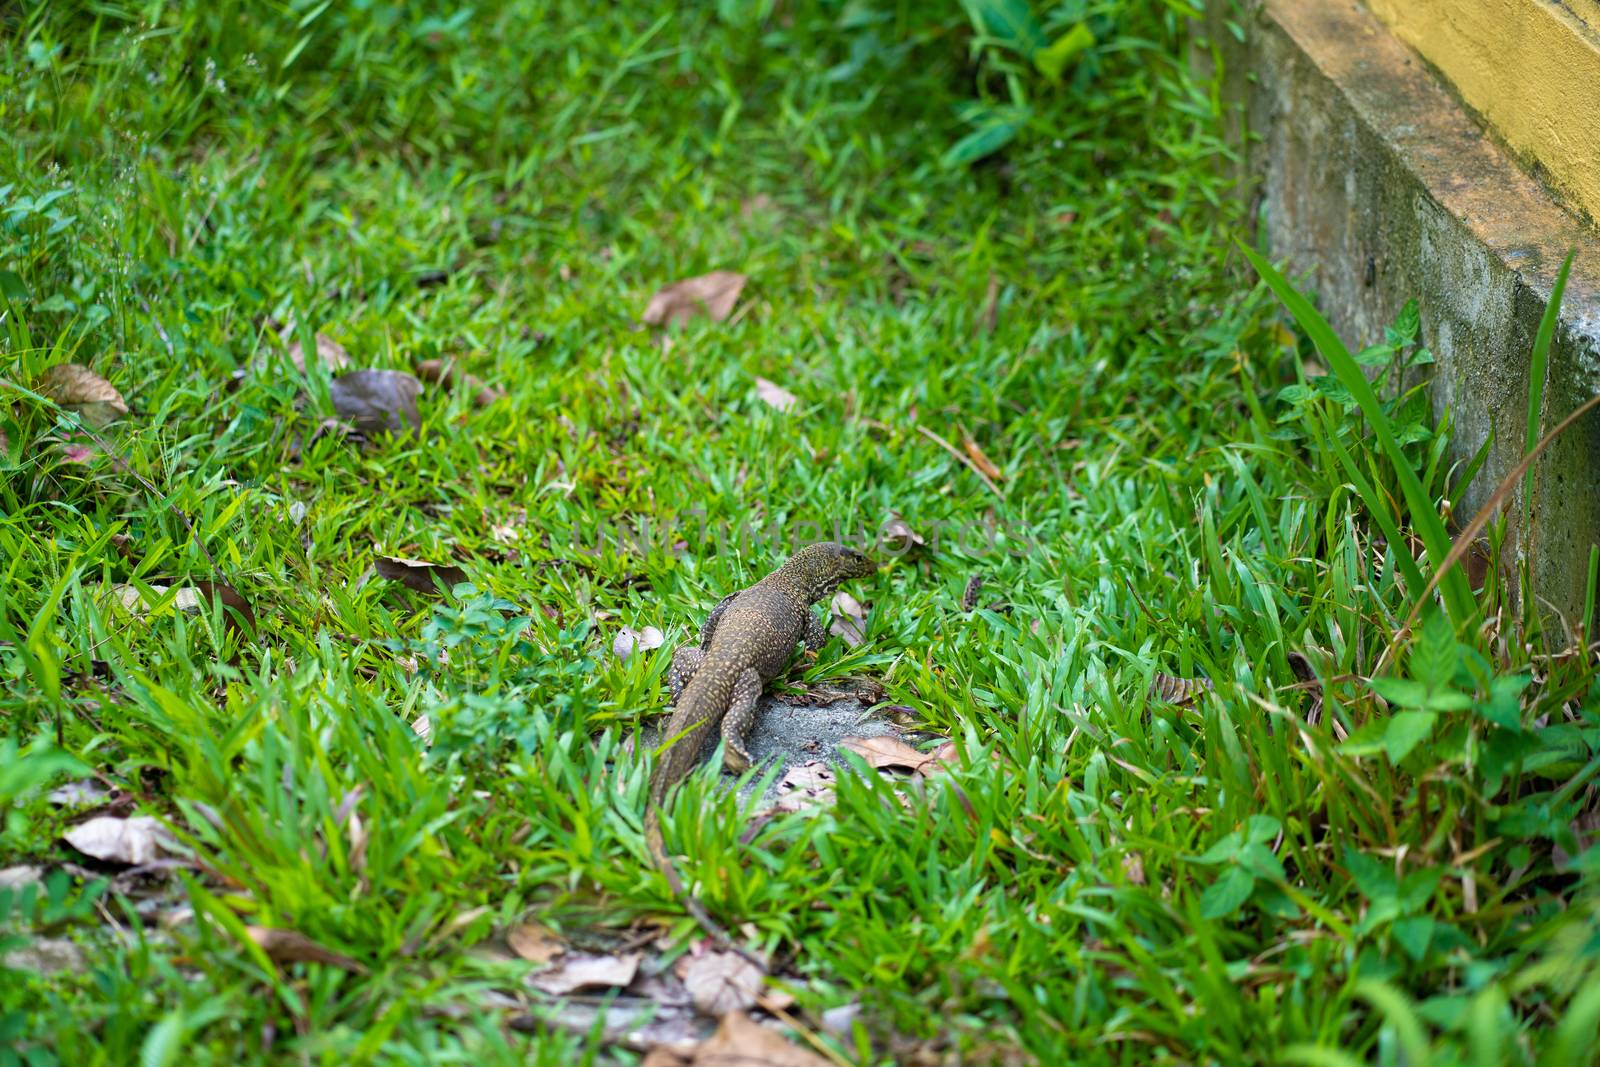 Komodo lizard walks on the lawn in the park by Try_my_best